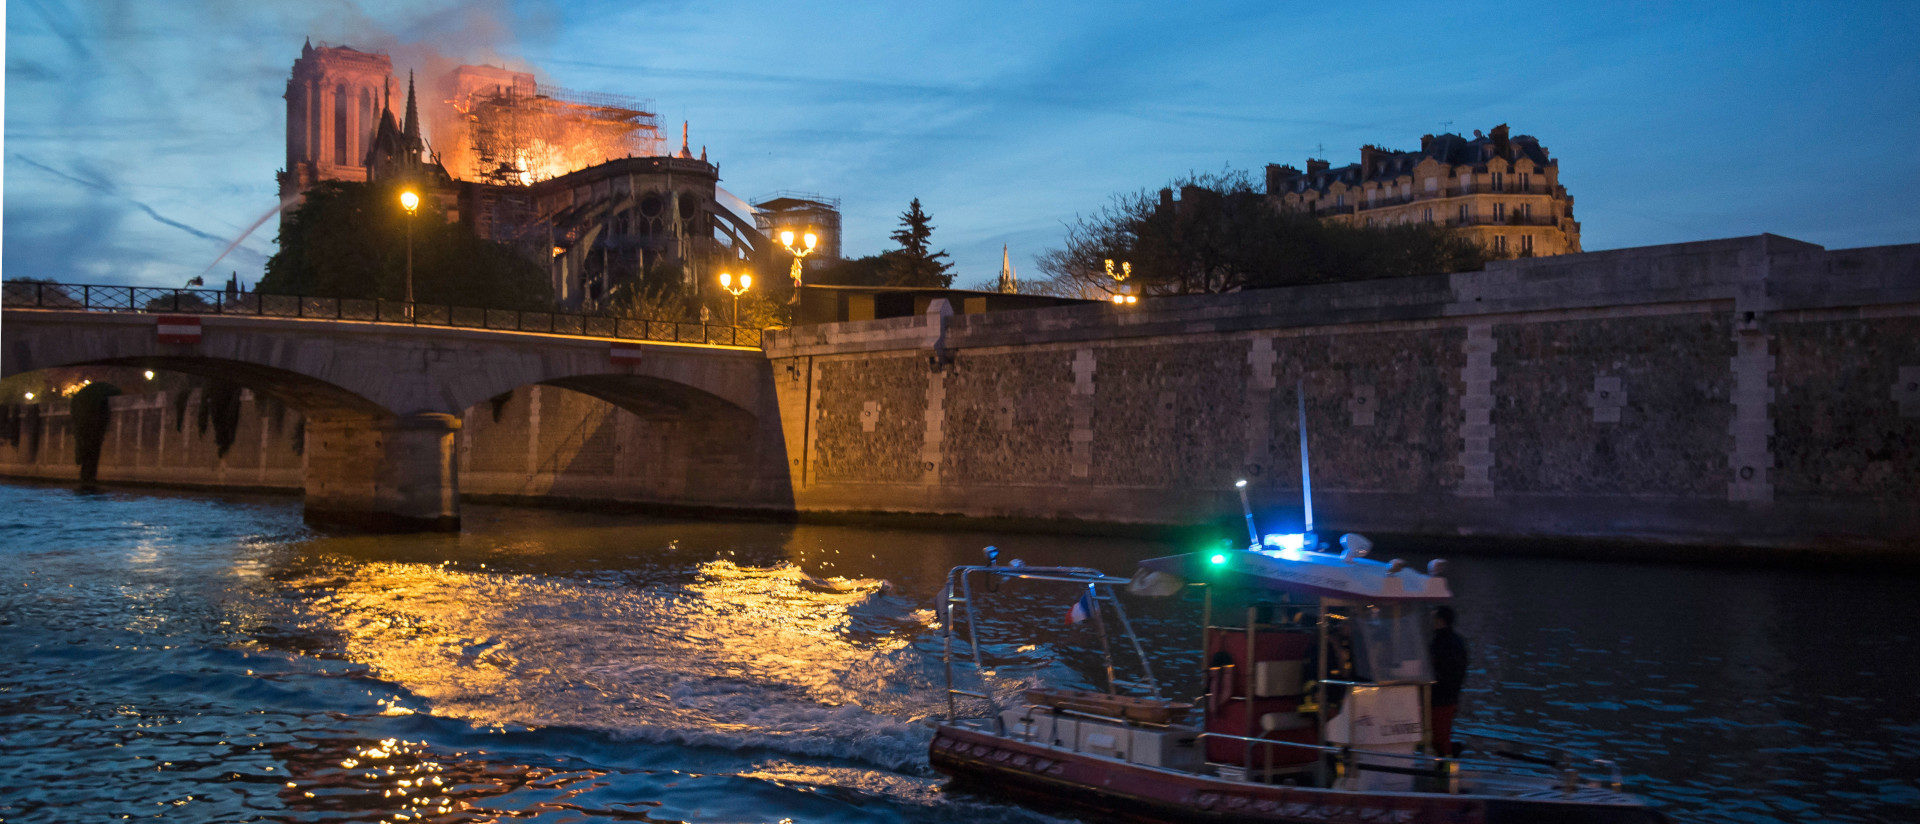 Sinnbild für Frankreichs Kirche: Brand der Kathedrale Notre-Dame in Paris am 15. April 2019.